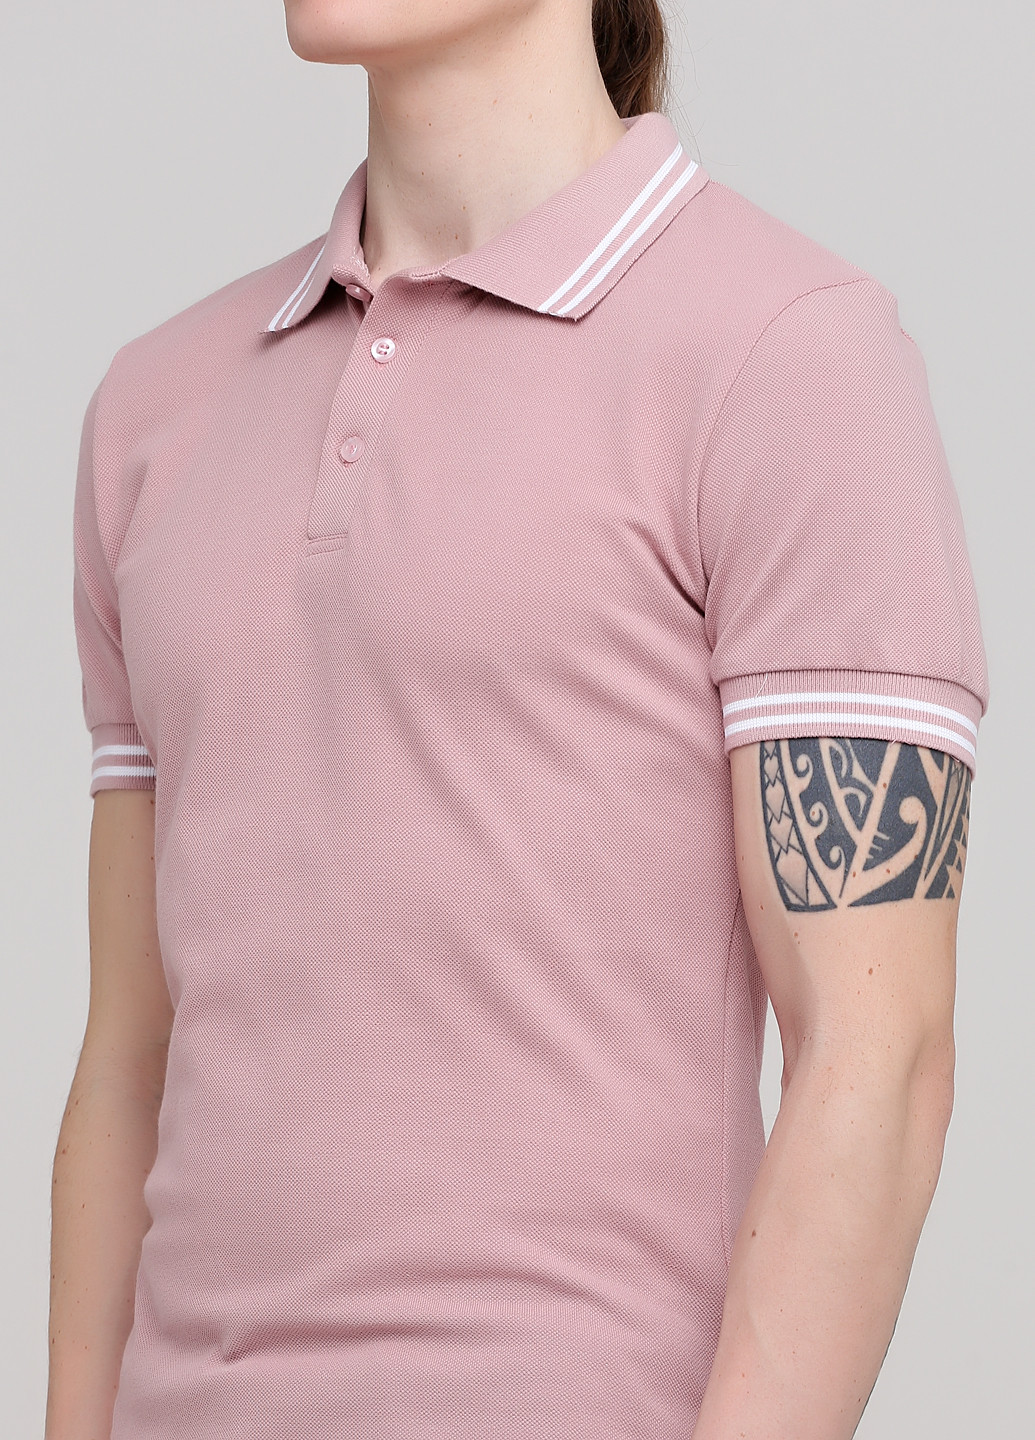 Бежевая футболка-мужская футболка поло персиковый пыльная роза для мужчин Melgo однотонная